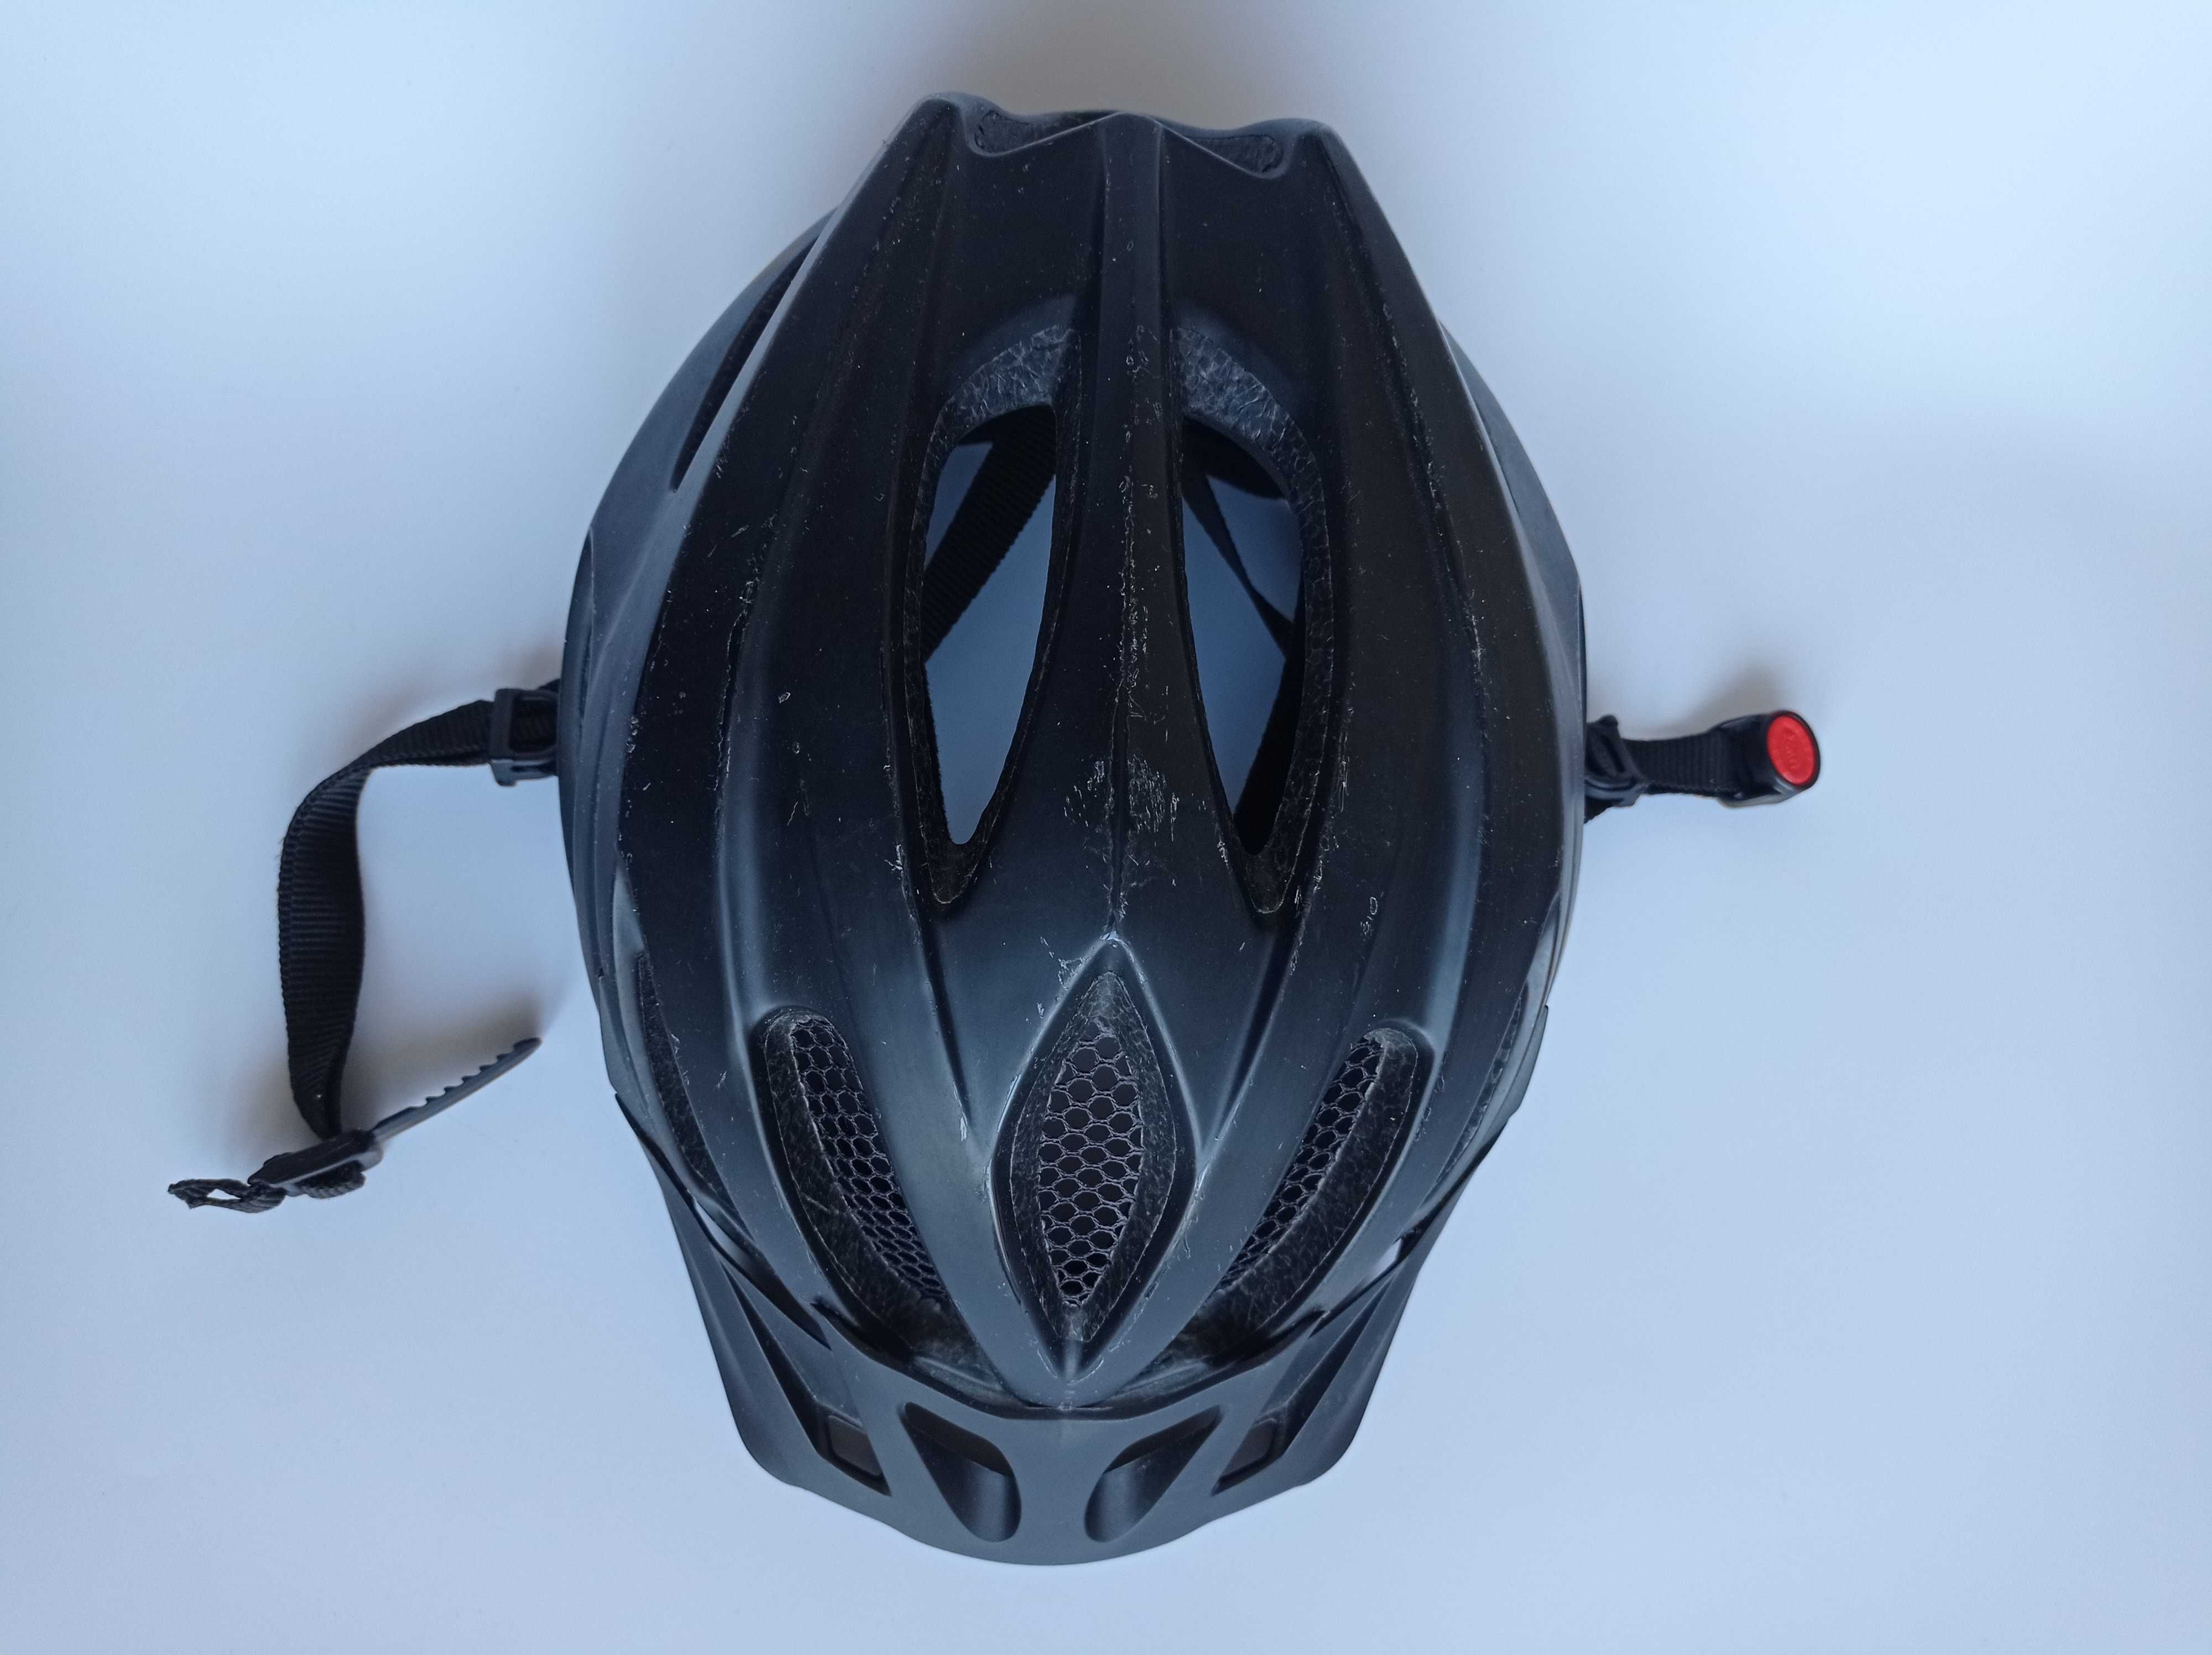 Шлем защитный Uvex Viva 2, размер 52-57см, велосипедный, Германия.